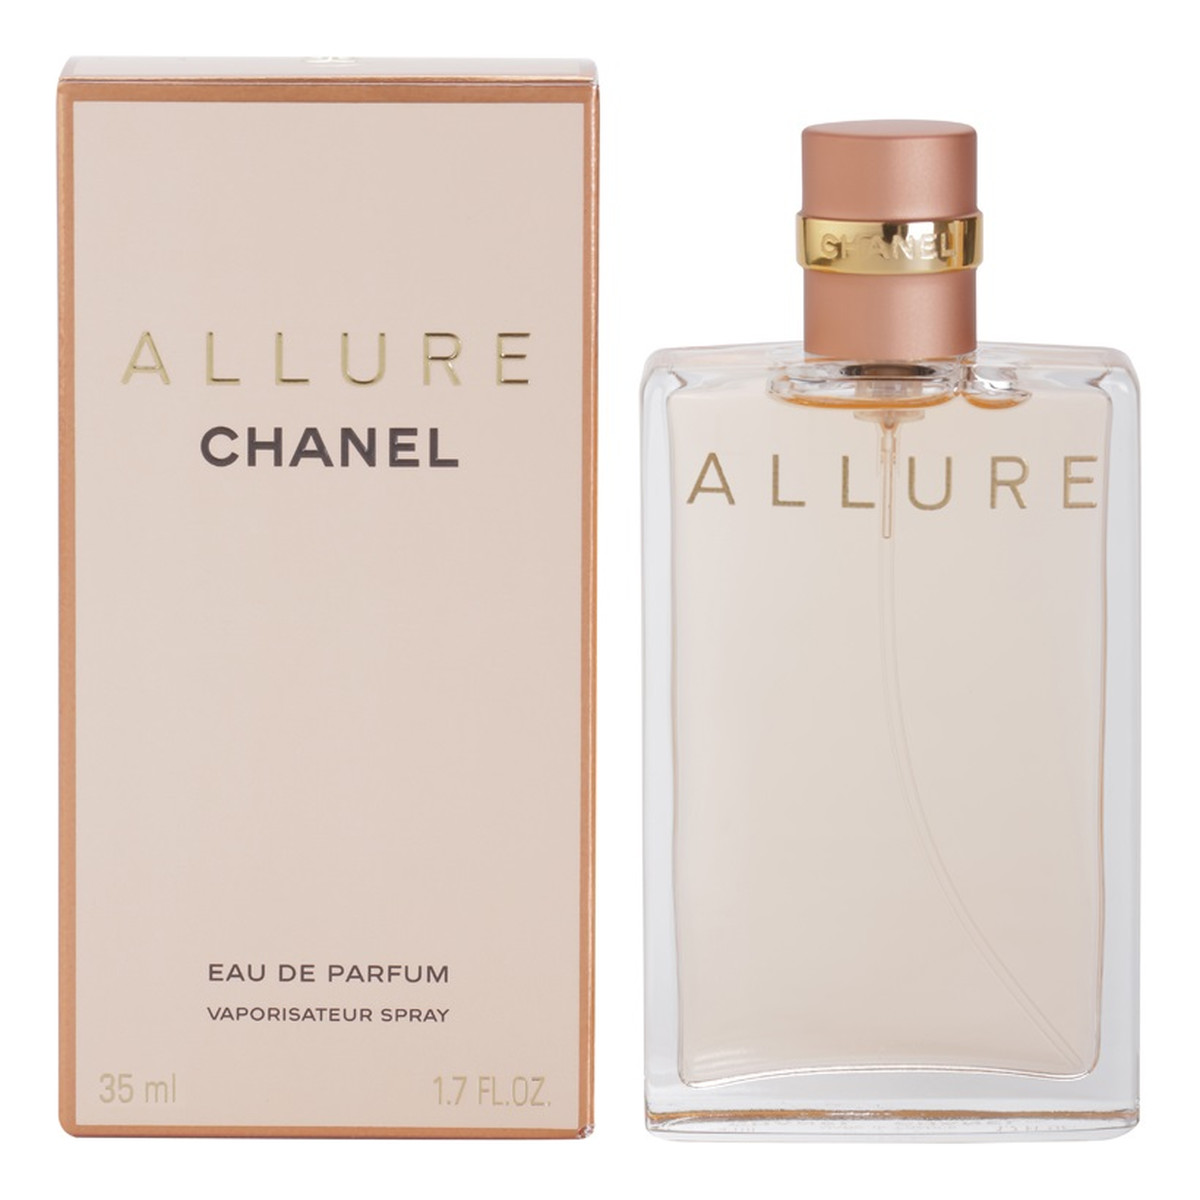 Chanel Allure woda perfumowana dla kobiet 35ml